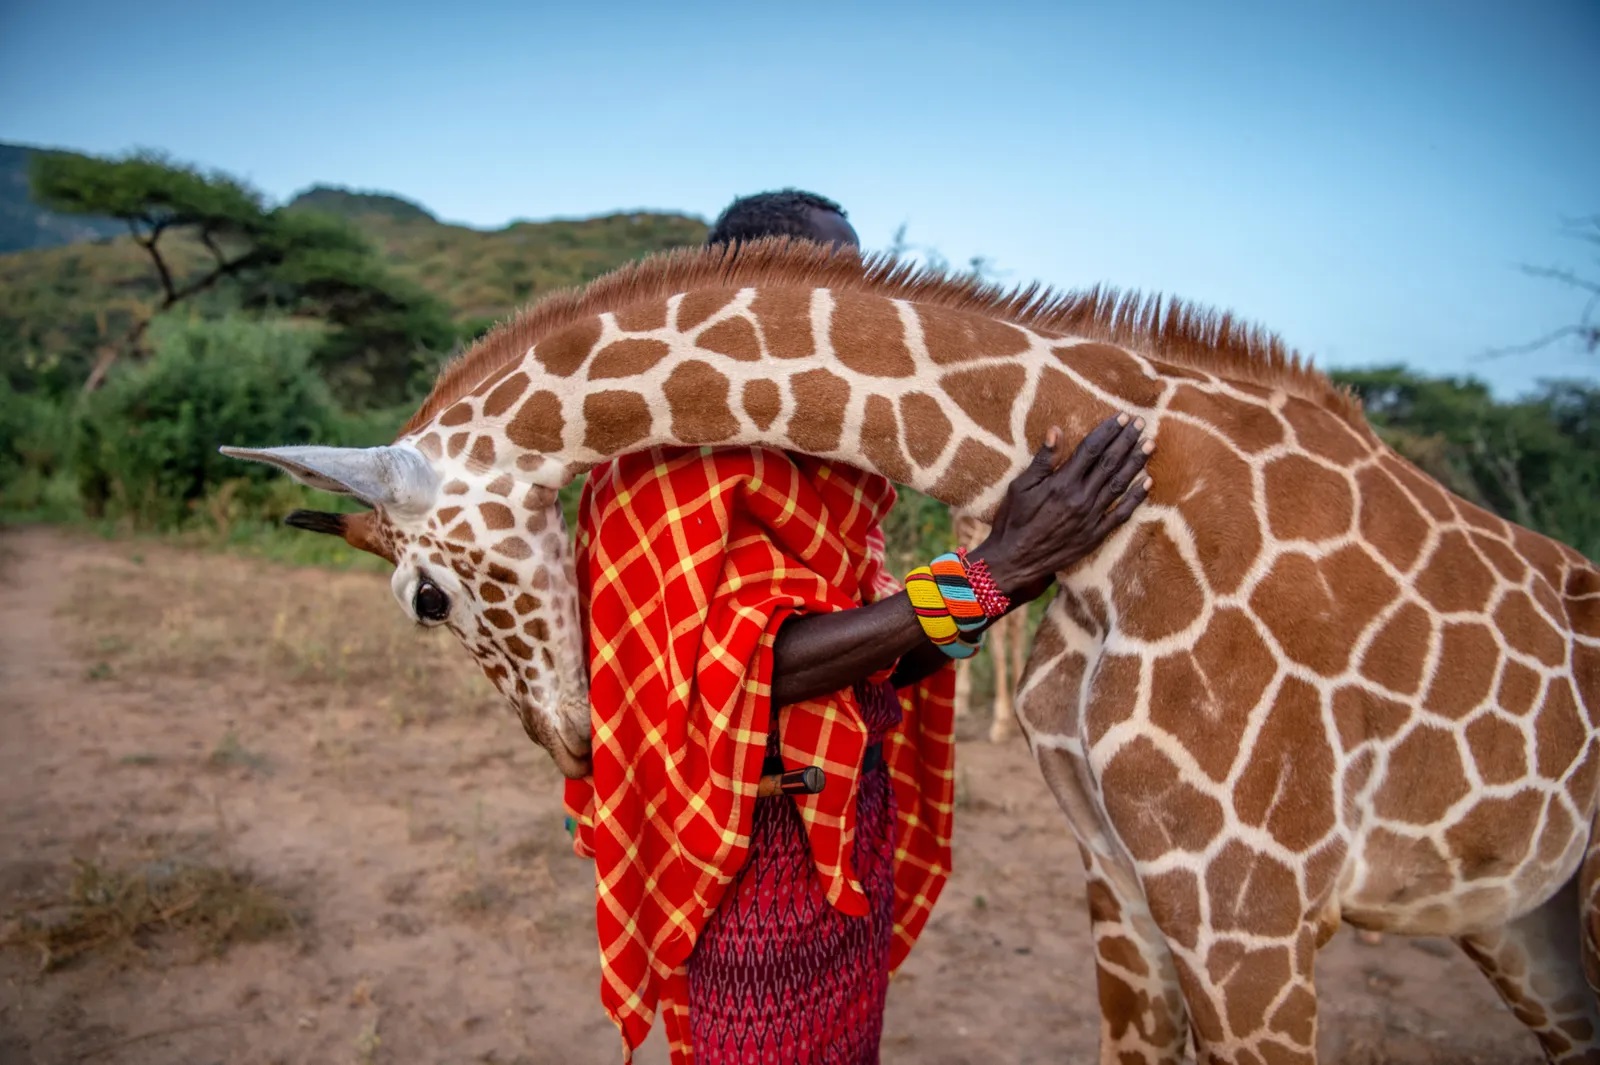 Zdjęcie autorstwa Ami Vitale @amivitale, Lekupania i żyrafa: osierocona młoda żyrafa siatkowana przytula się do opiekuna zwierząt z @sararacamp, Lekupanii. Żyrafa ta została poddana rehabilitacji i przywrócona do życia w naturze, podobnie jak wiele innych przed nią. Liczba żyjących obecnie żyraf siatkowanych wynosi mniej niż 16 000, a cała populacja żyraf w Afryce zmniejszyła się o 40 procent w ciągu trzech ostatnich dekad. Naukowcy podejmują się obecnie poważnych badań mających na celu zrozumienie, dlaczego żyrafy wymierają i co można zrobić, by zatrzymać ten proces. Dowiedz się więcej, obserwując @amivitale i @vital.impacts.